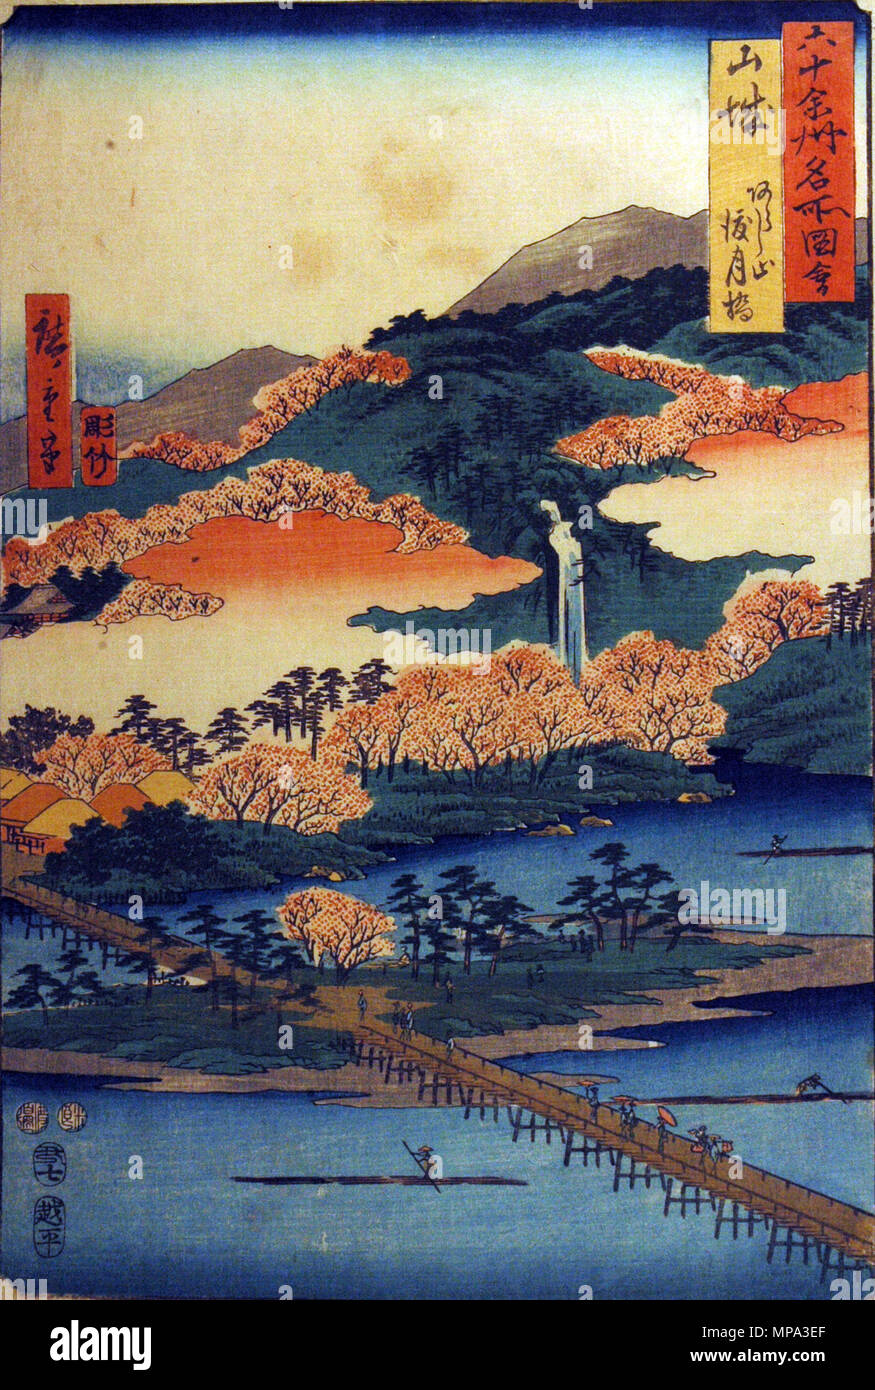 . Inglese: il numero di accessione: 1957.256 Visualizza artista: Utagawa Hiroshige Visualizza titolo: 'Yamashiro Provincia, il ponte Togetsu in Arashiyama' Titolo serie: famose vedute del sessanta-odd Province Nome Suite: Rokujuyoshu meisho zue Data di creazione: 1853 medie: Woodblock Altezza: 13 1/2 in. Larghezza: 9 1/8 in. Dimensioni display: 13 1/2 in. x 9 1/8 in. (34.29 cm x 23,18 cm) Editore: Koshimuraya Heisuke linea di credito: lascito della signora Cora Timken Burnett copia etichetta: "Una delle serie: Rokuju ye Shin. Meisho dzu. ''Vista di 60 o più province". Pubblicato da Koshei kei nel 1853-1856. Incluso in questo colle Foto Stock